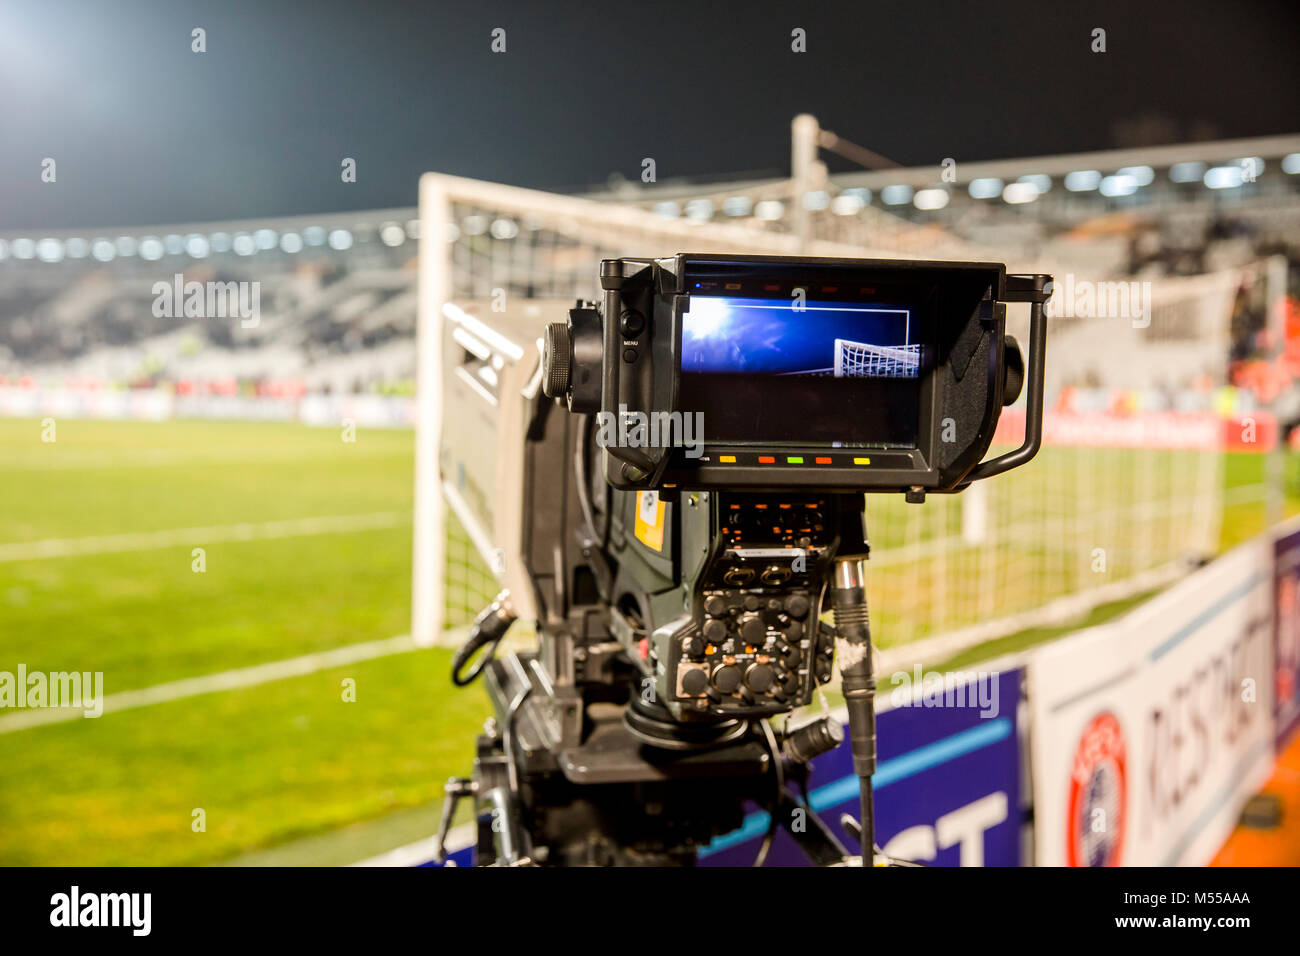 TV-Kamera im Stadion während der Fußballspiele im Fernsehen Kamera während  der Fußball Match Stockfotografie - Alamy